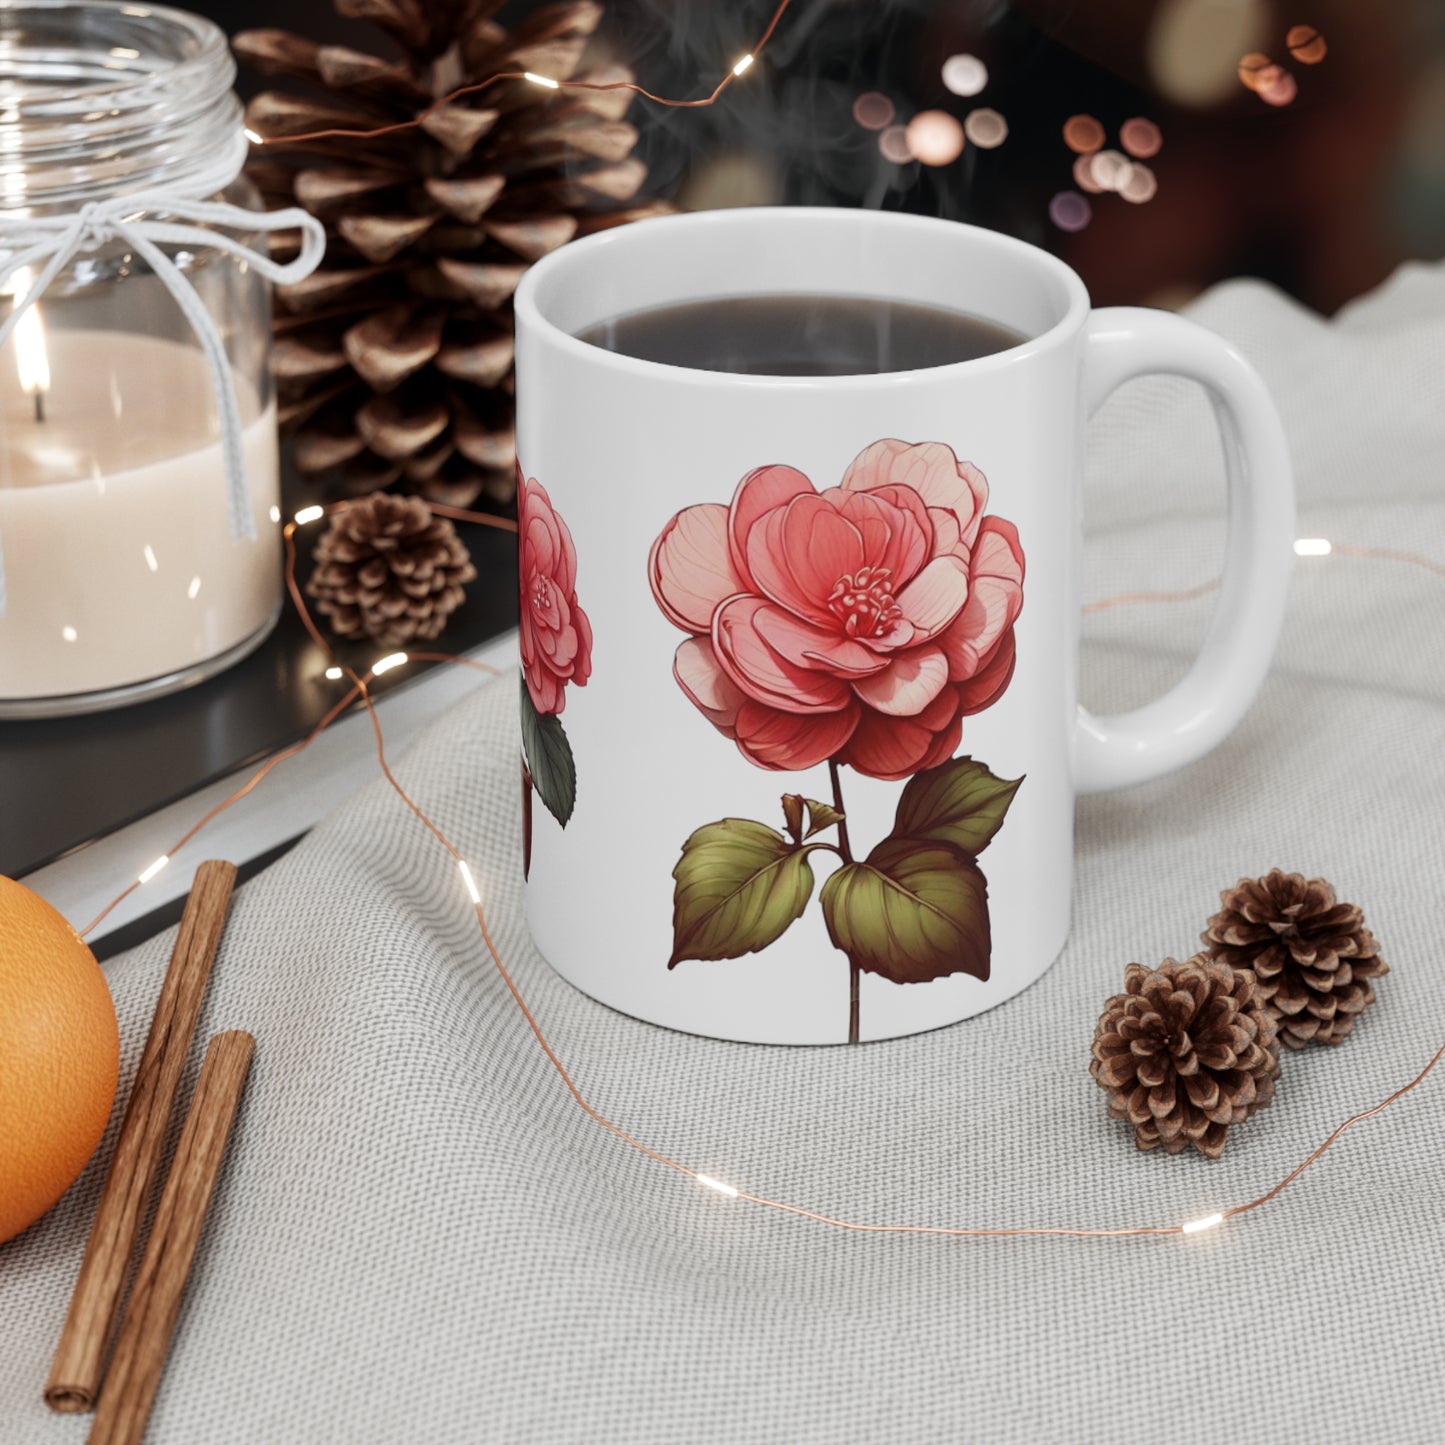 Pink Begonia Flowers Mug - Ceramic Coffee Mug 11oz